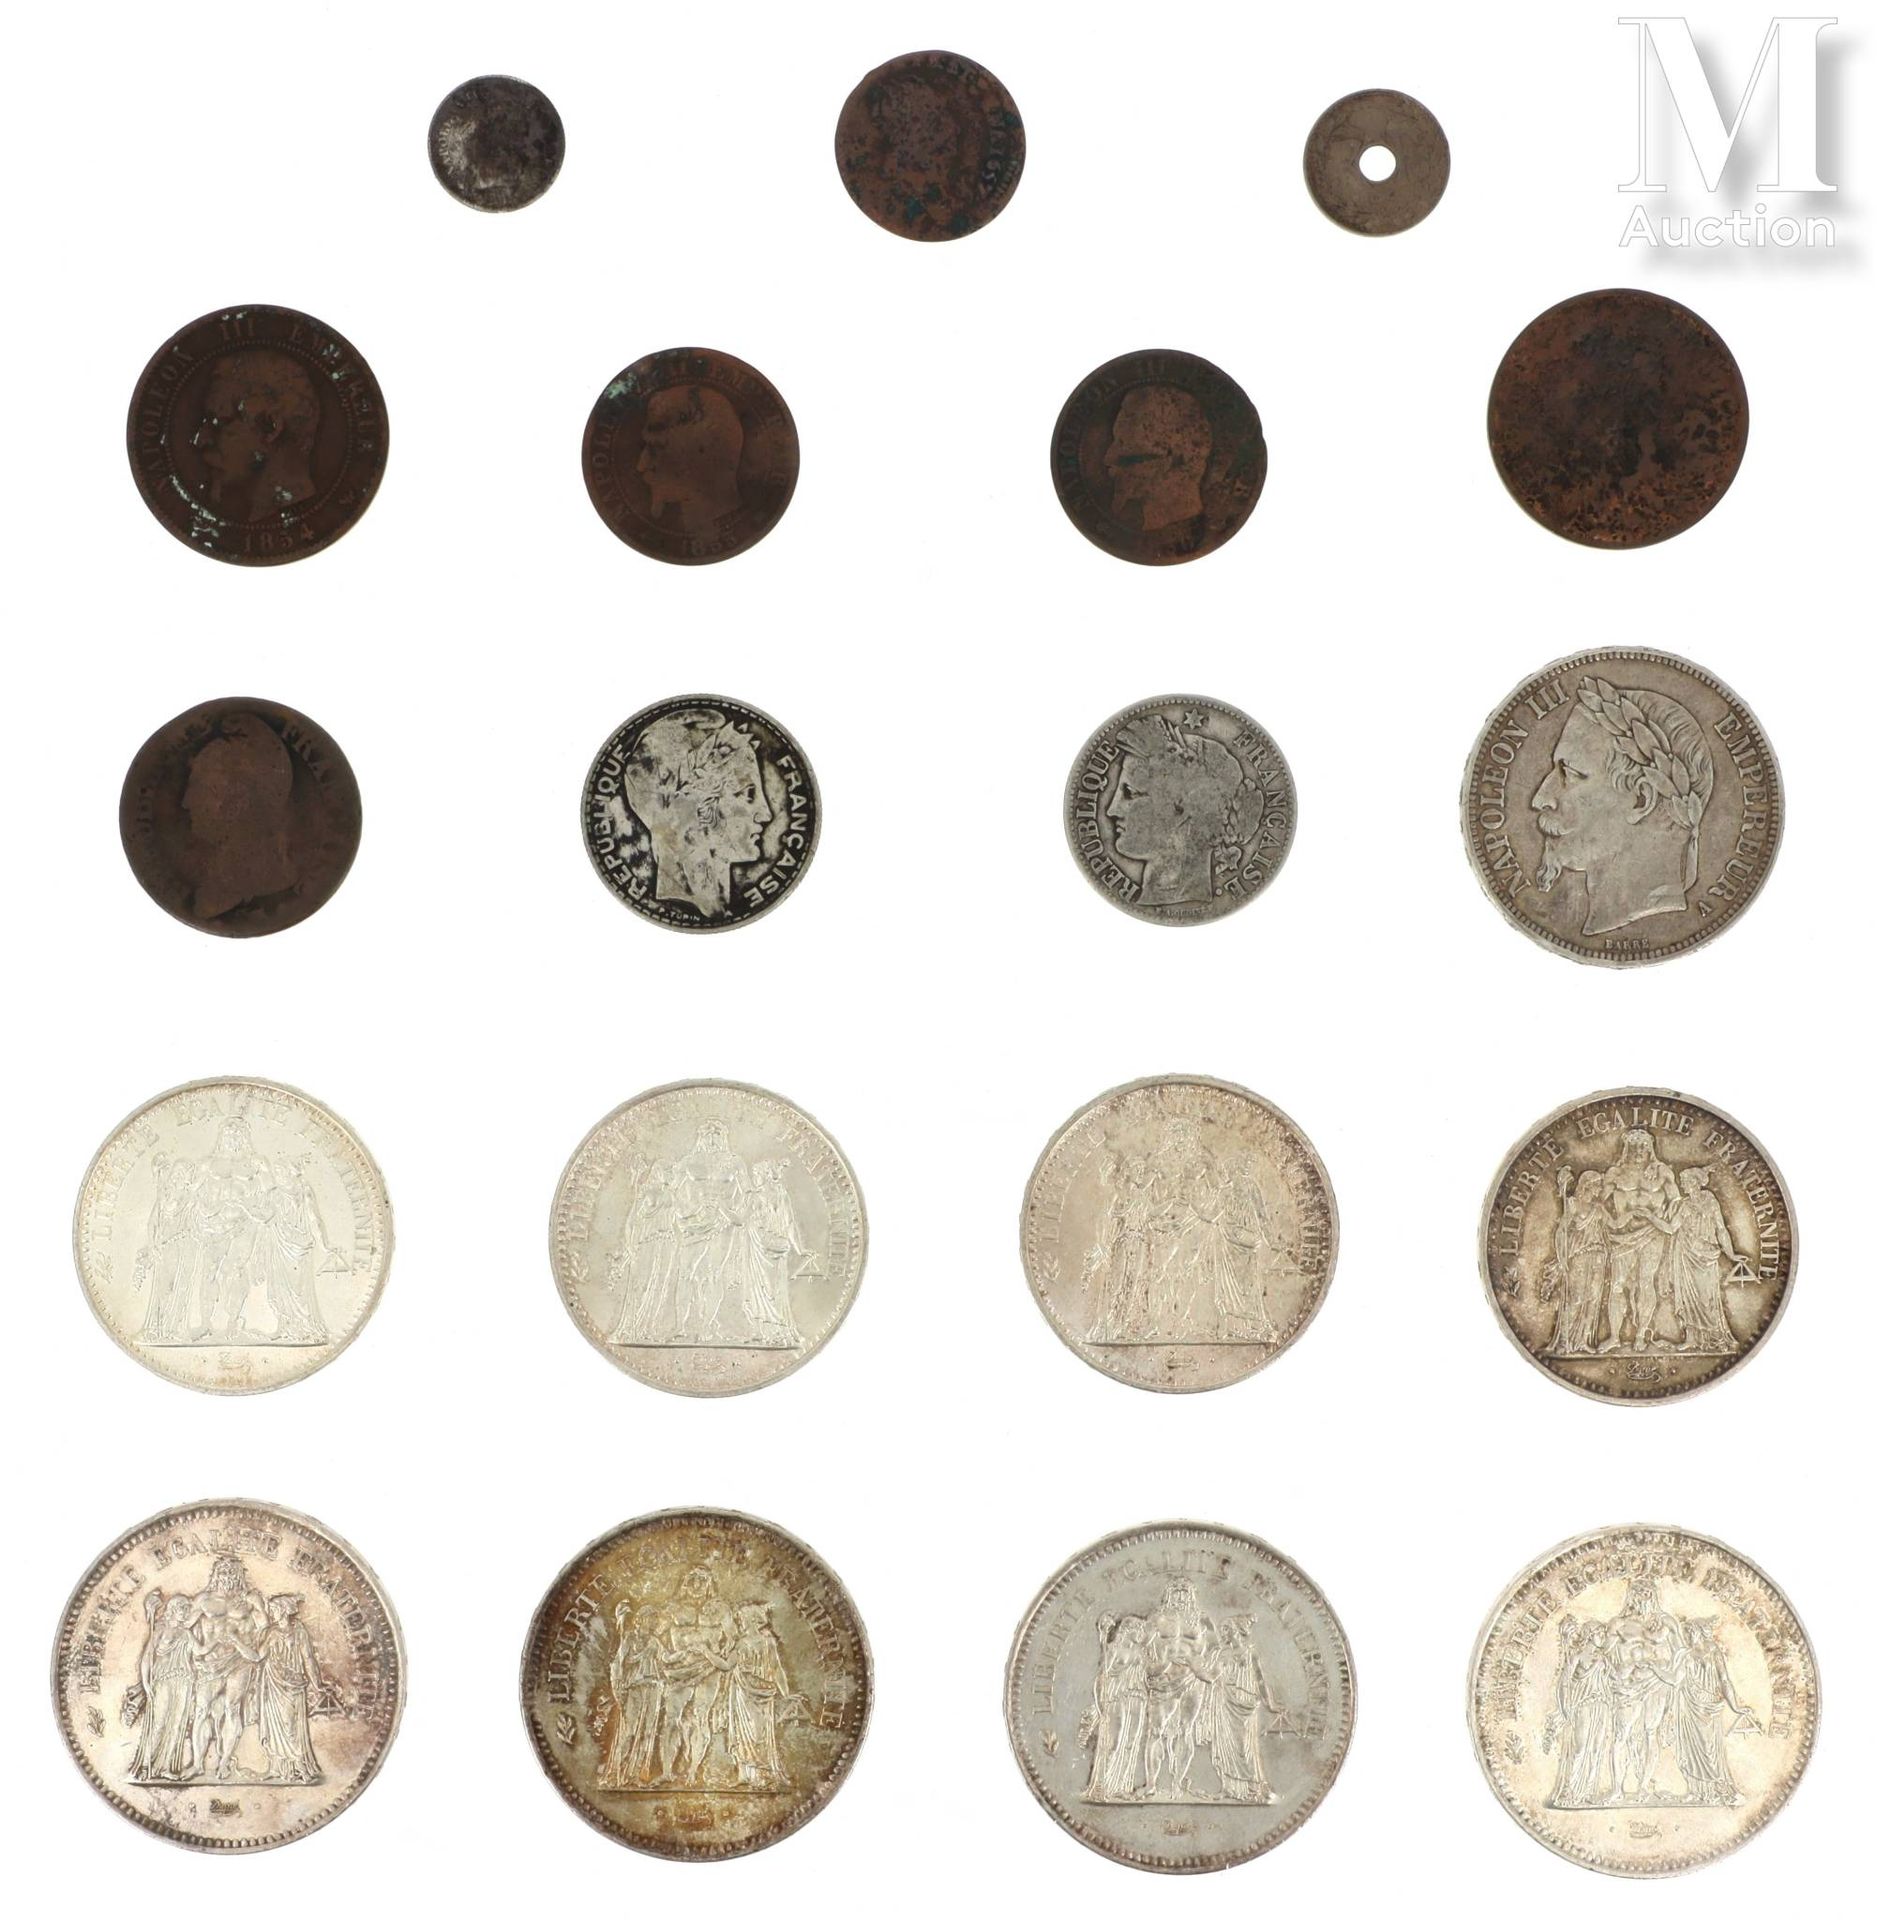 LOT DE PIECES DE MONNAIE EN ARGENT Lot of silver coins including: 

- 4 x 50 FF &hellip;